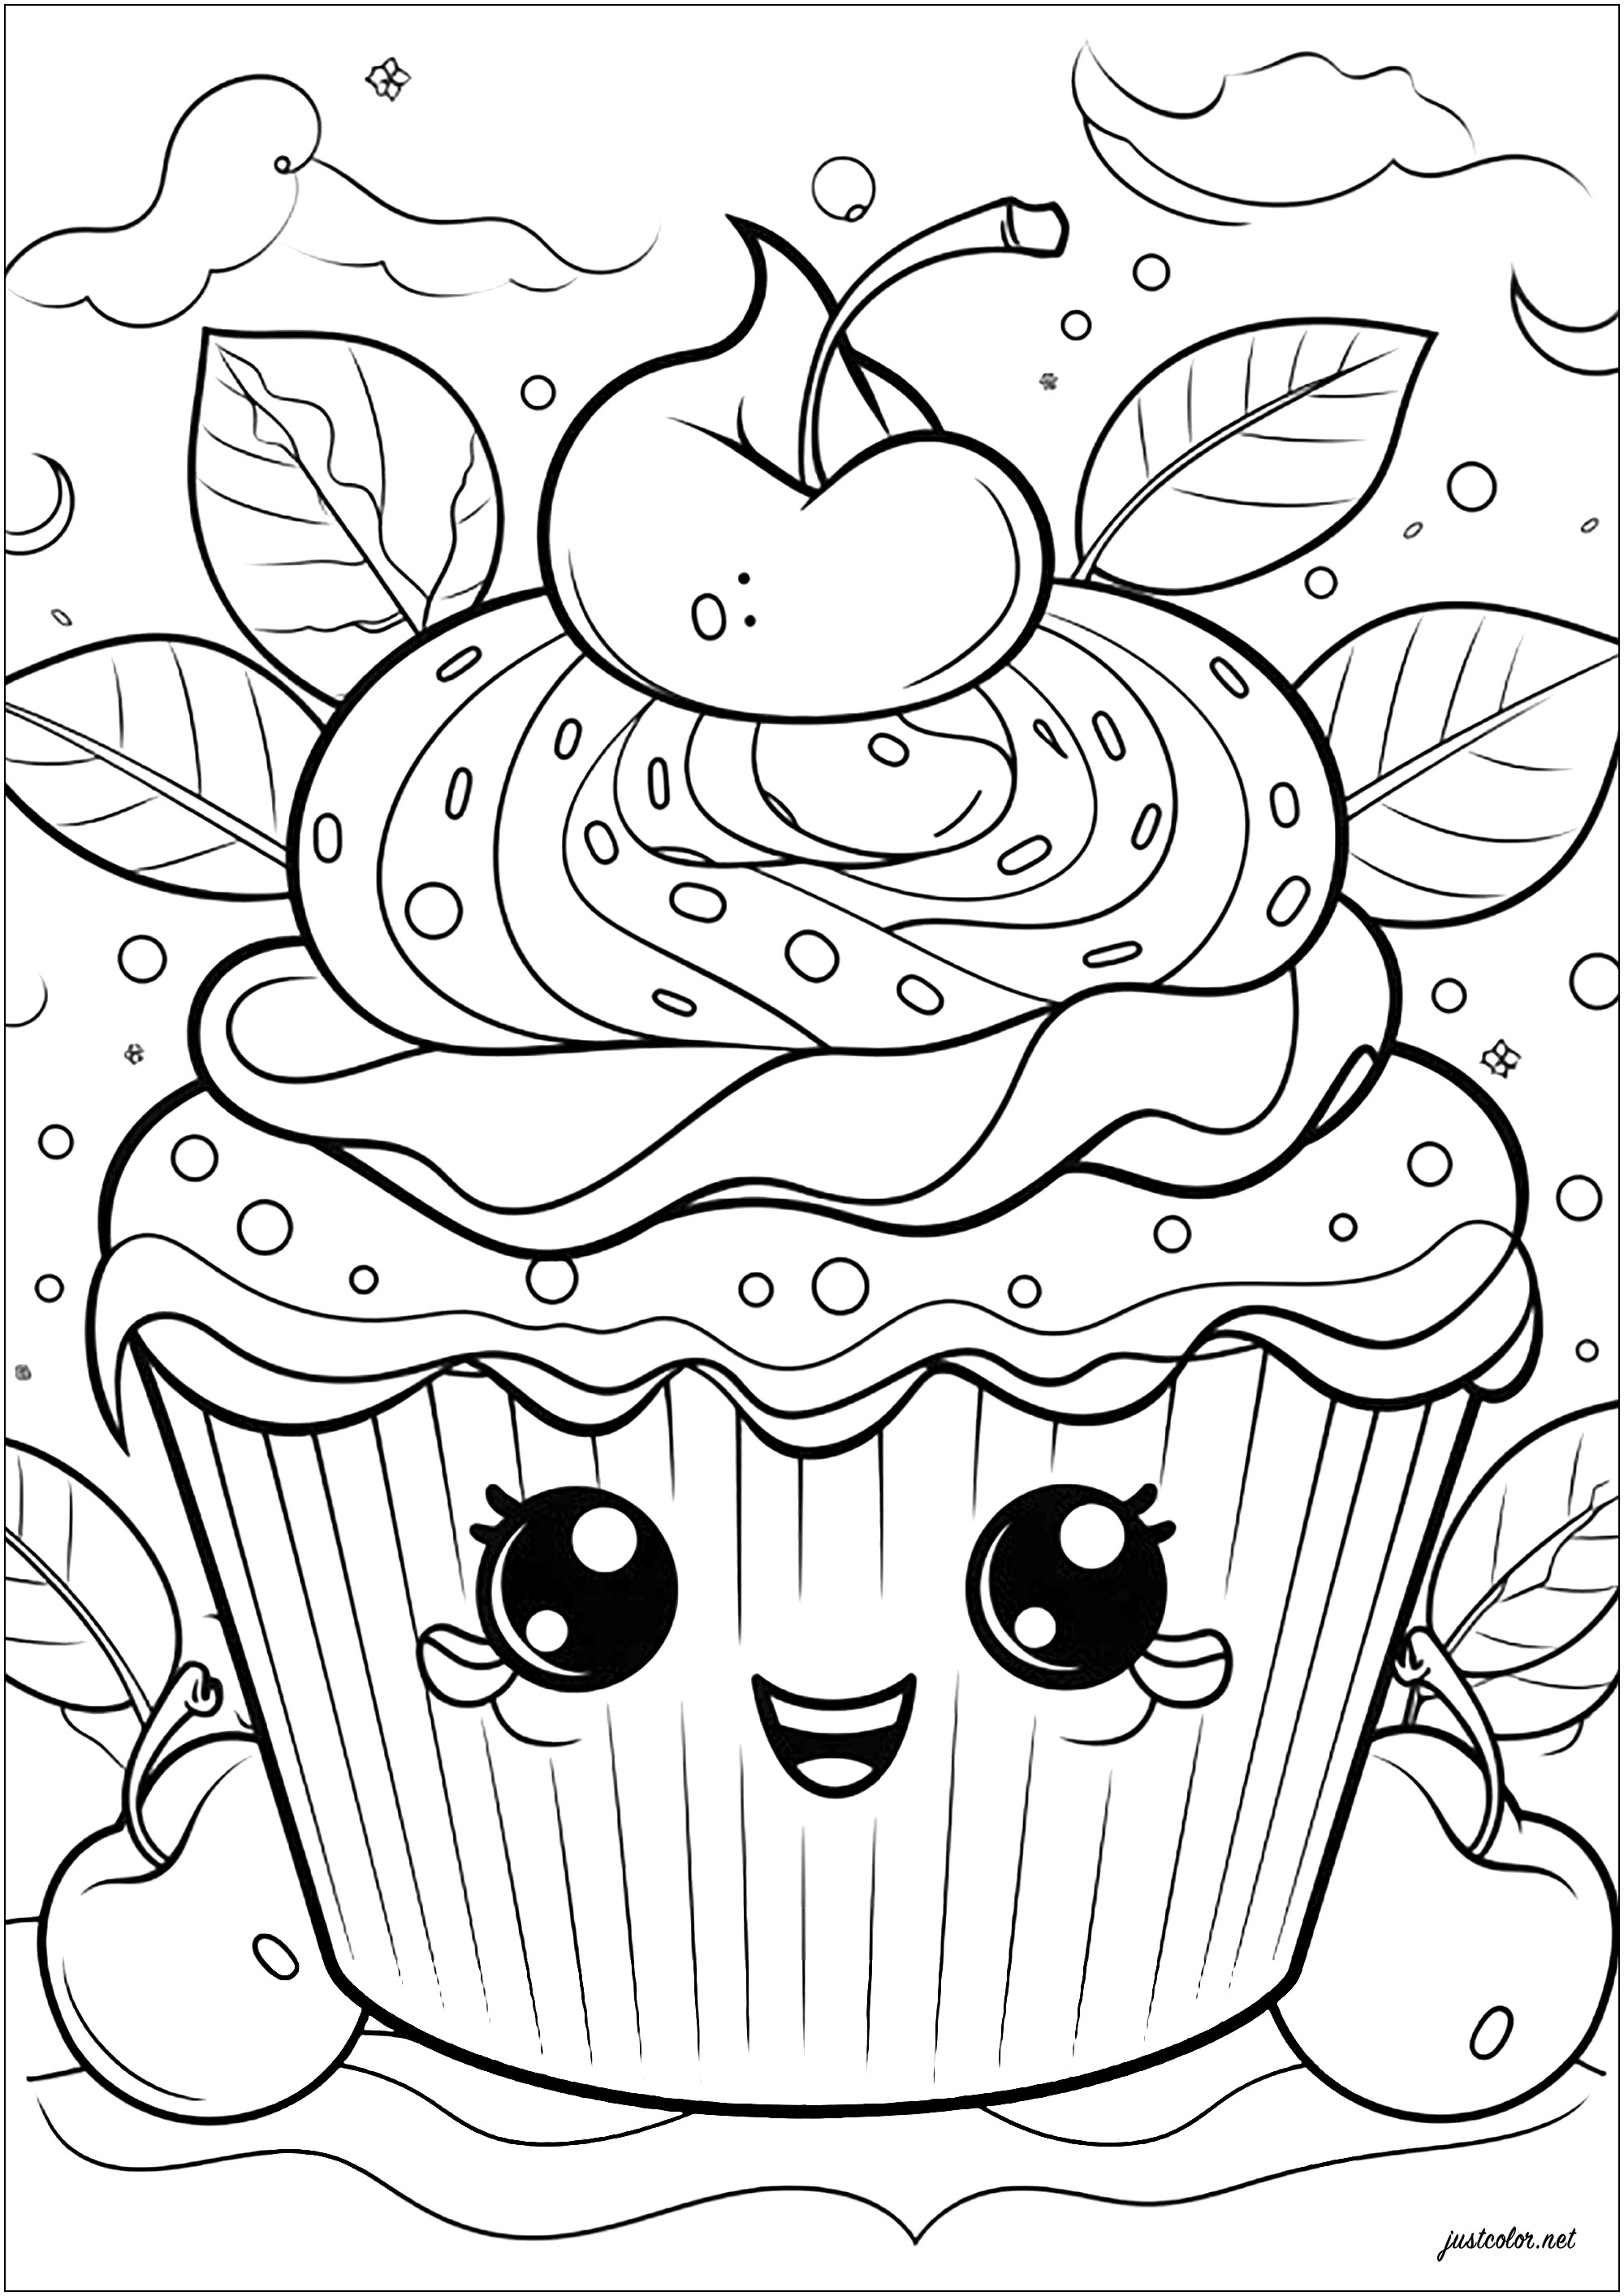 Joli cupcakes et cerises. Beaucoup de beaux détails à colorier